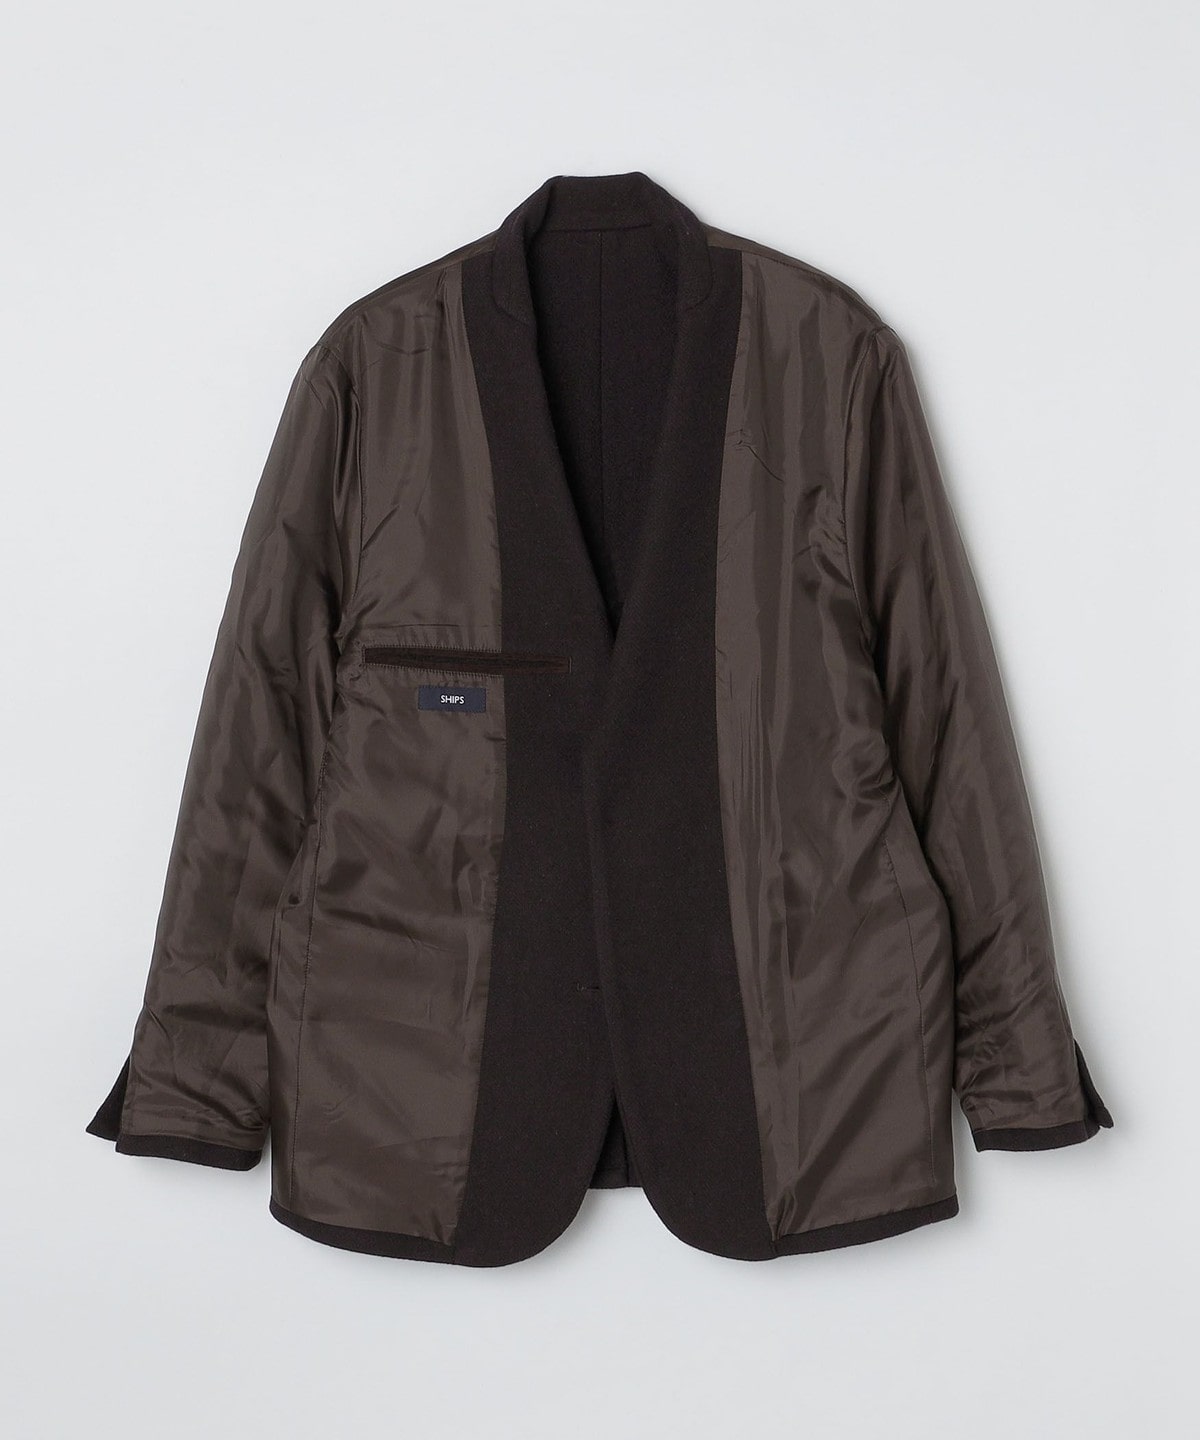 着丈約73ｃｍ後襟下裾イタリア製 ASPESI サーモアエコダウン ウールツイード 2Bジャケット L